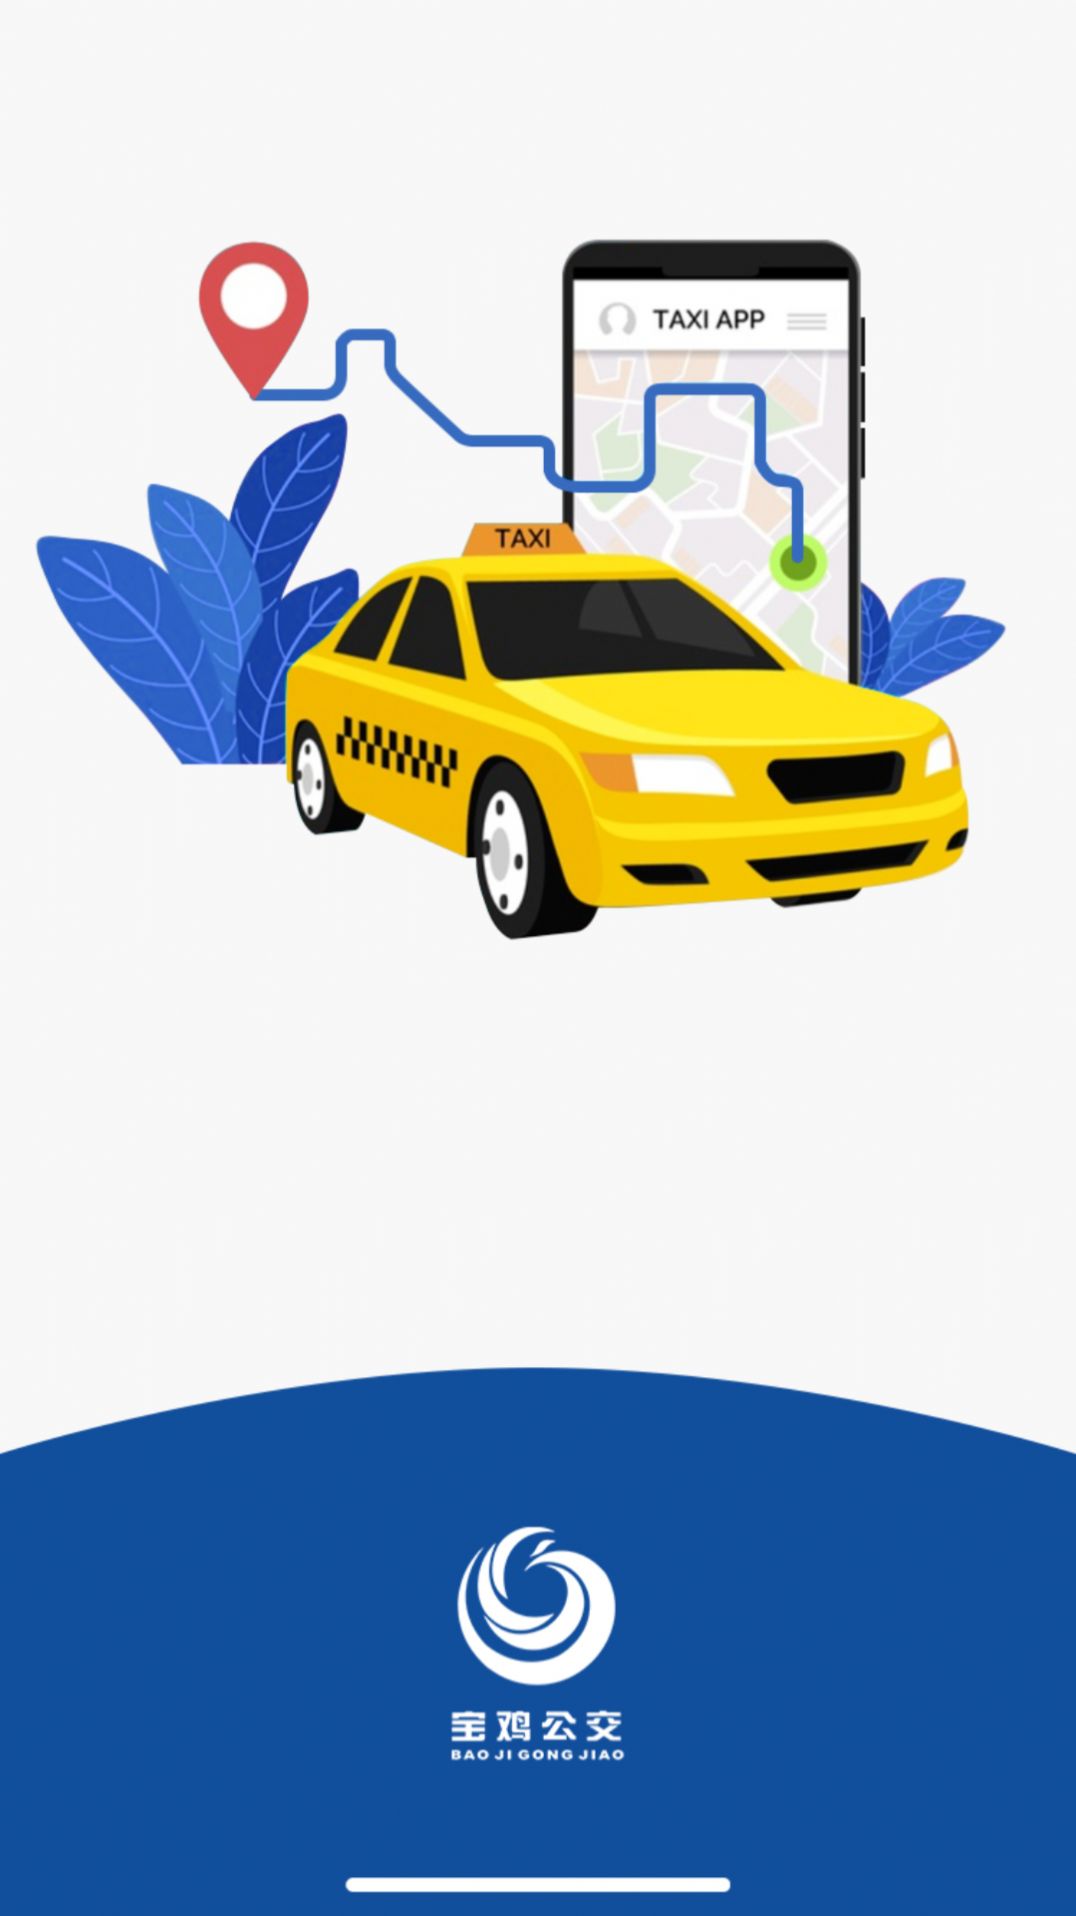 宝鸡行司机服务app官方版 v1.0.0